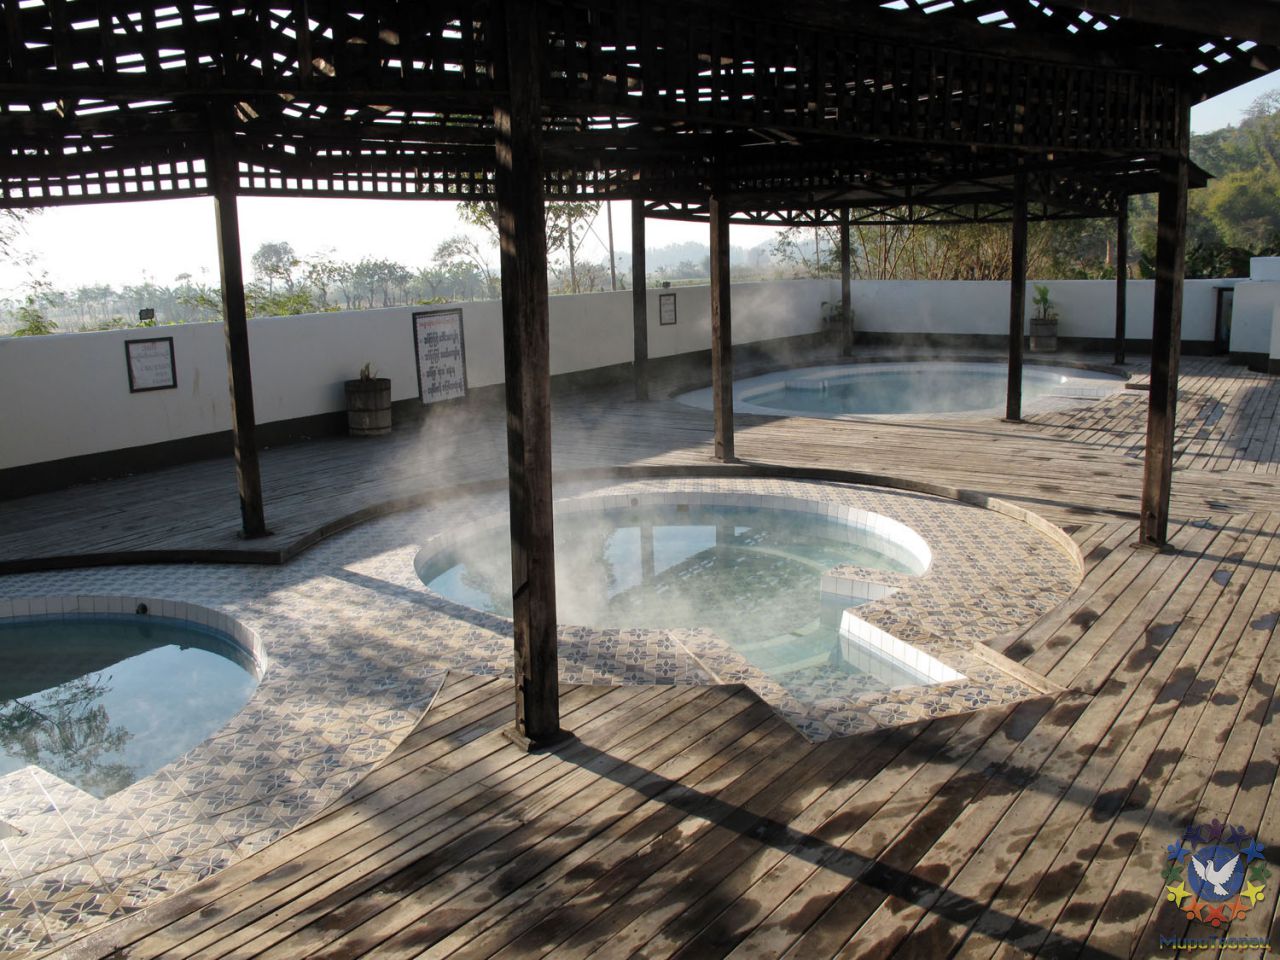 Горячие источники на озере Инле, горячая вода в трех источниках (кипяток, горячая и теплая ванна) - Мьянма 2011 (виды, природа, лица) II часть